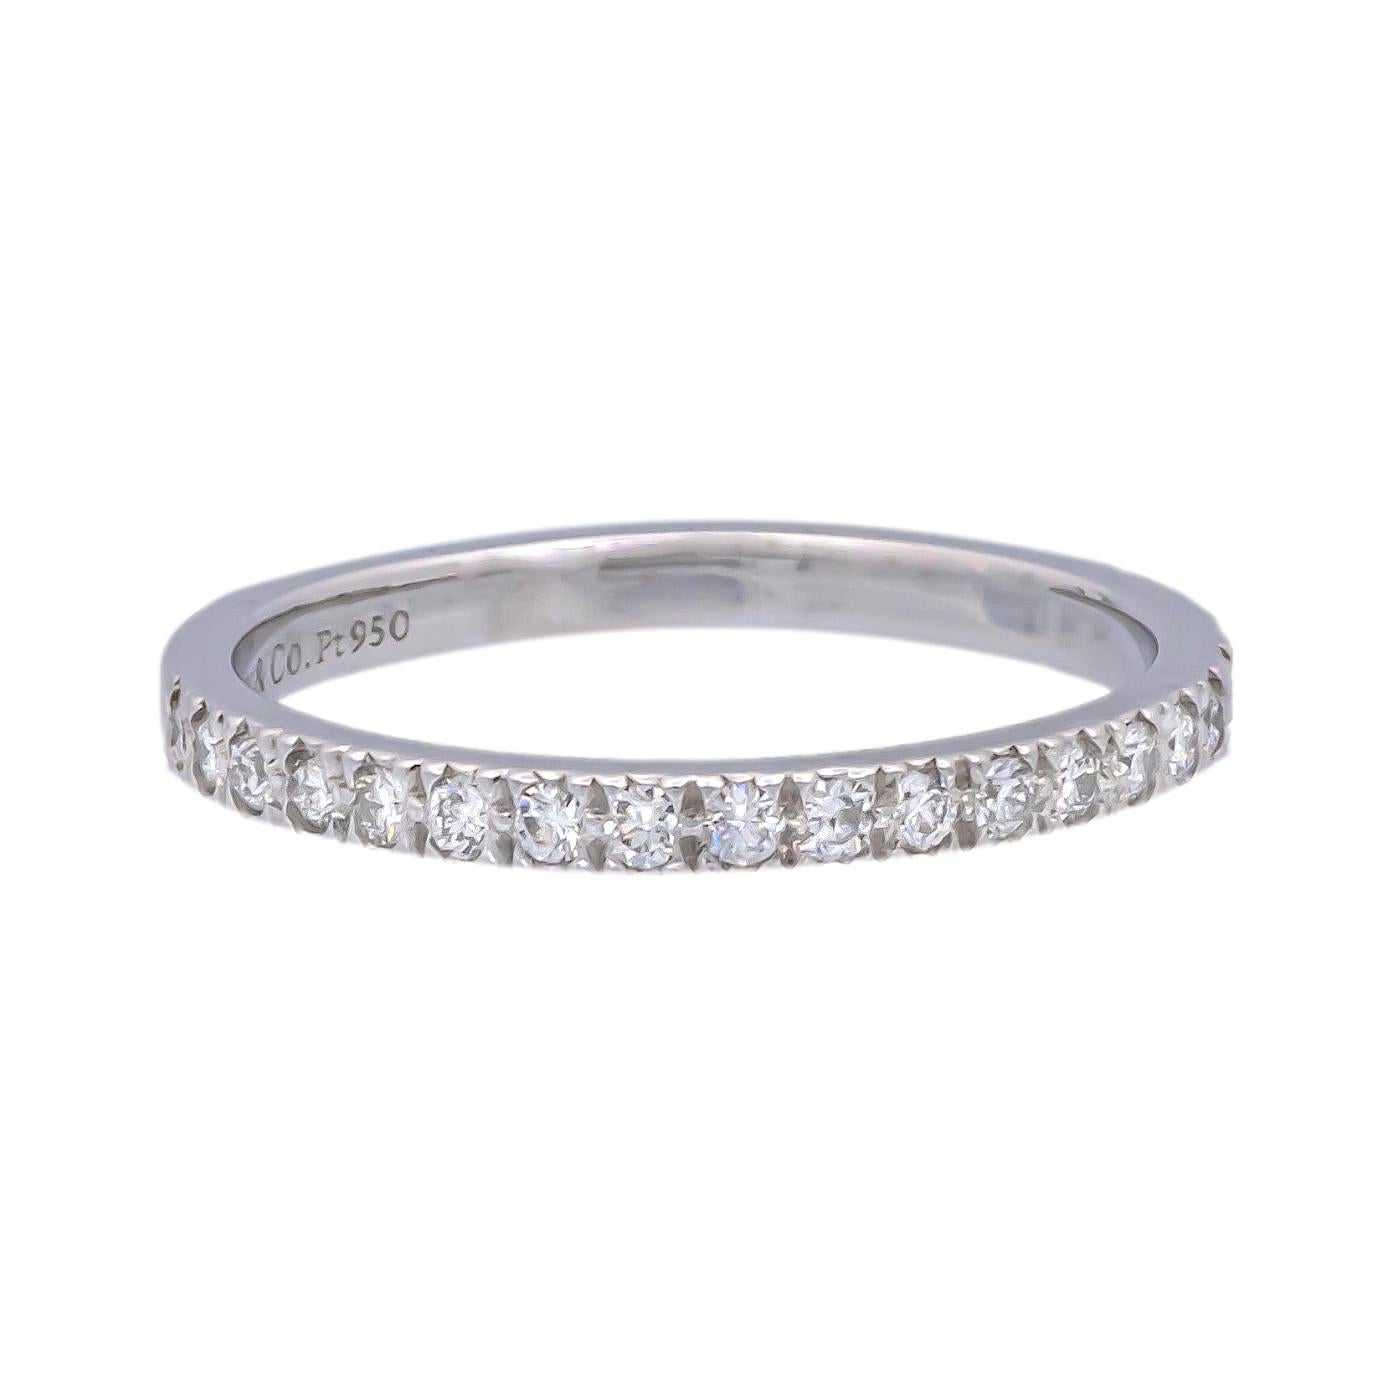 Tiffany & Co. Bandring der Collection'S Novo aus Platin mit 18 runden Diamanten im Brillantschliff mit einem Gesamtgewicht von ca. 0,18 Karat, die in einer halbkreisförmigen Perlenfassung eingefasst sind. Vollständig gestempelt mit Logo und